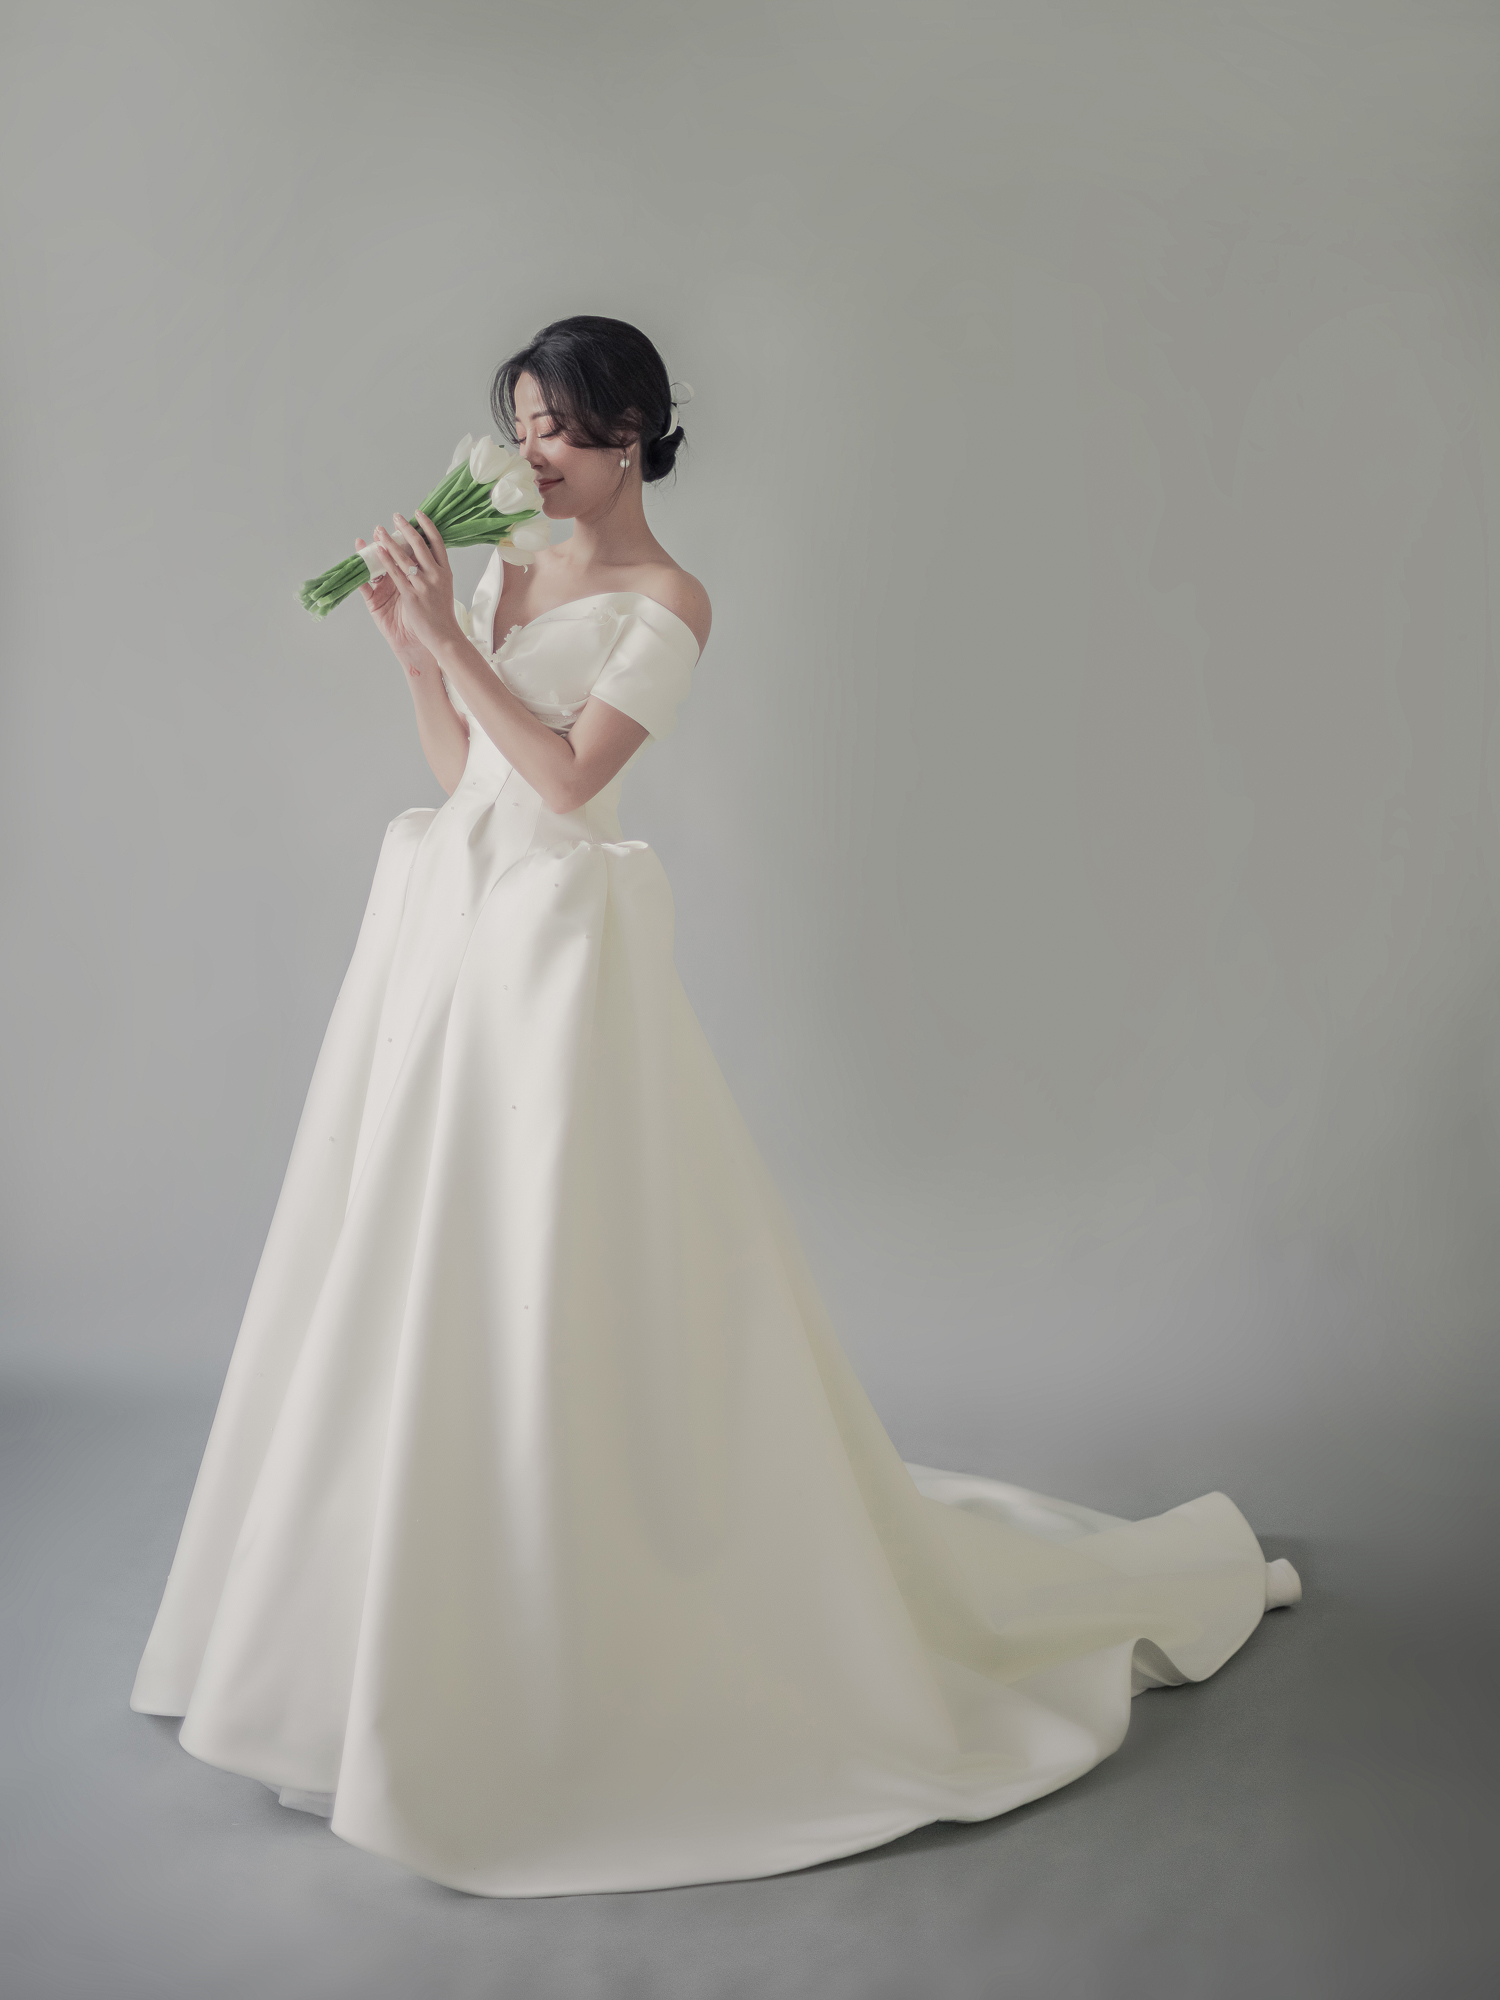 Hé lộ bộ ảnh cưới của Karen Nguyễn cùng ông xã: Áo cưới được đính kết hơn 1000 viên pha lê